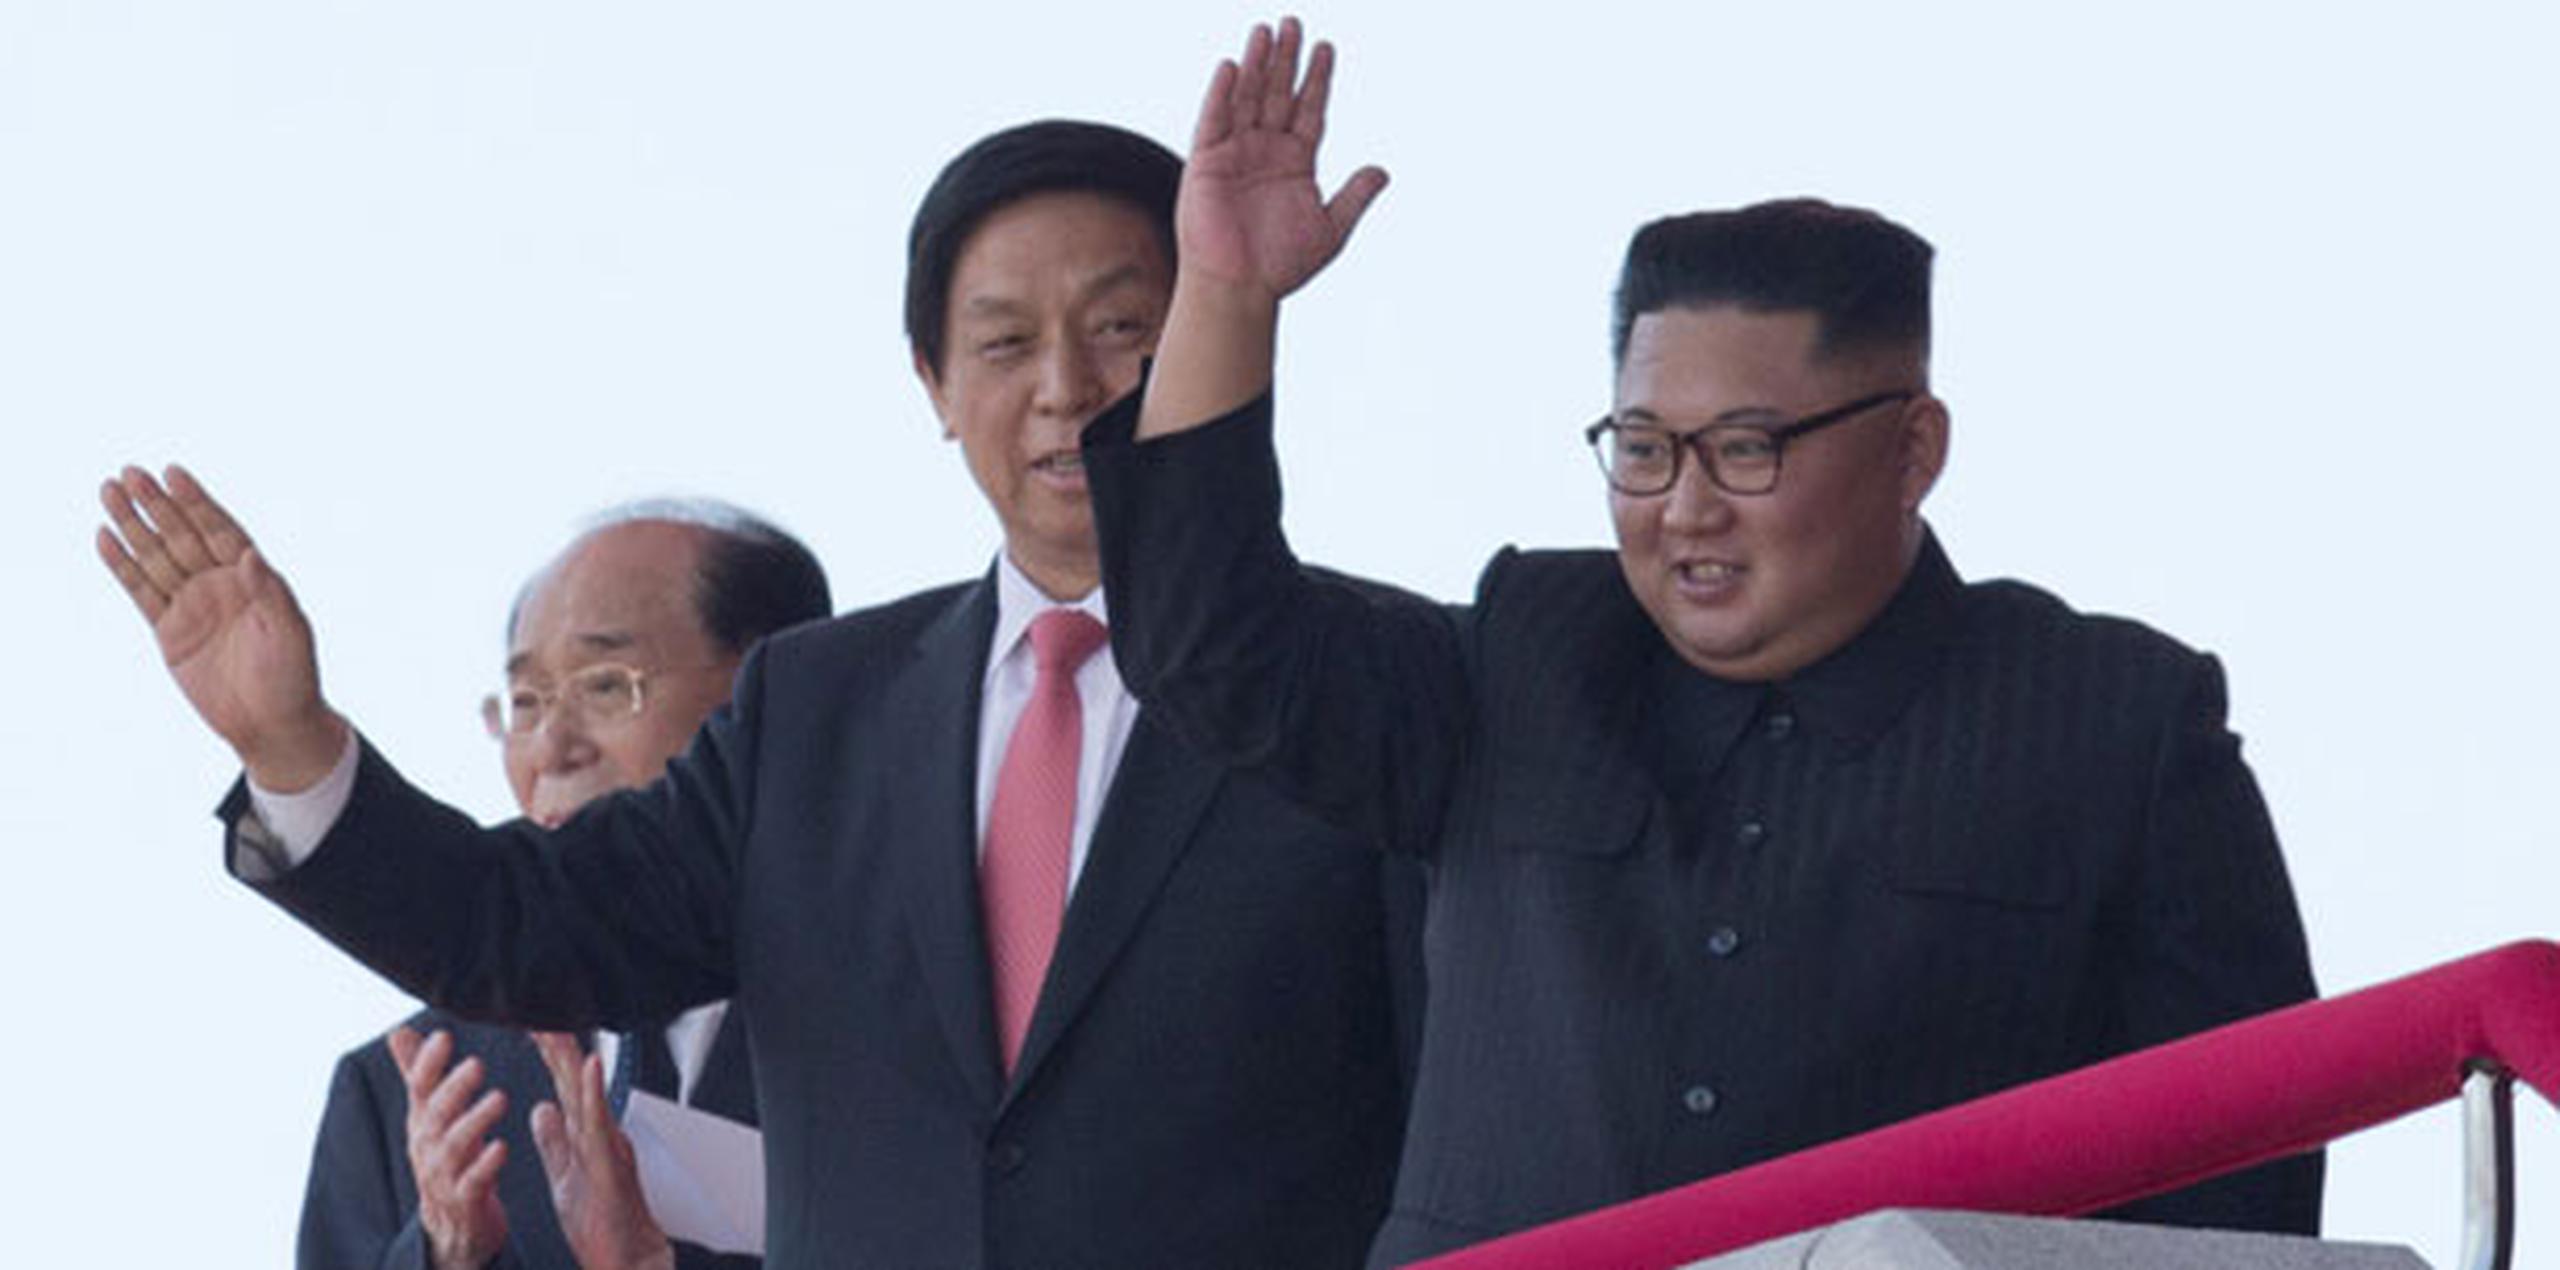 Aunque Corea del Norte realiza desfiles militares casi todos los años, y justo realizó uno antes de que comenzaran las Olimpiadas en Corea del Sur en febrero pasado, el desfile del domingo ocurrió en un momento particularmente delicado. (AP)